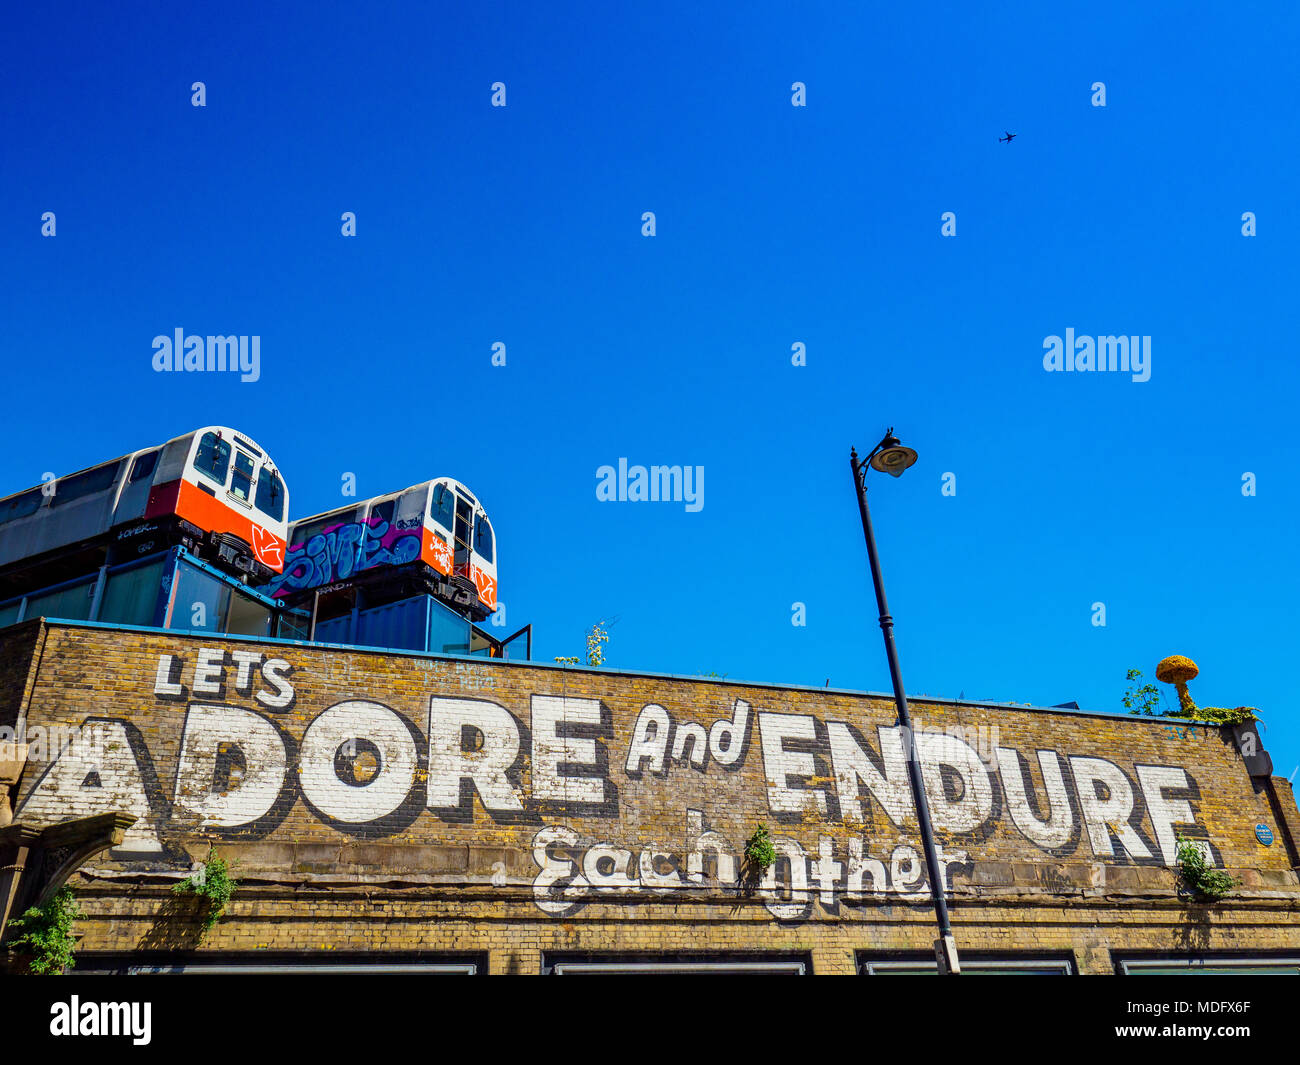 Laissez Adore et endurez le monument dans la Great Eastern Street Shoreditch Graffiti de Londres par l'artiste américain Steve Powers, les trains calèches maintenant studios Banque D'Images